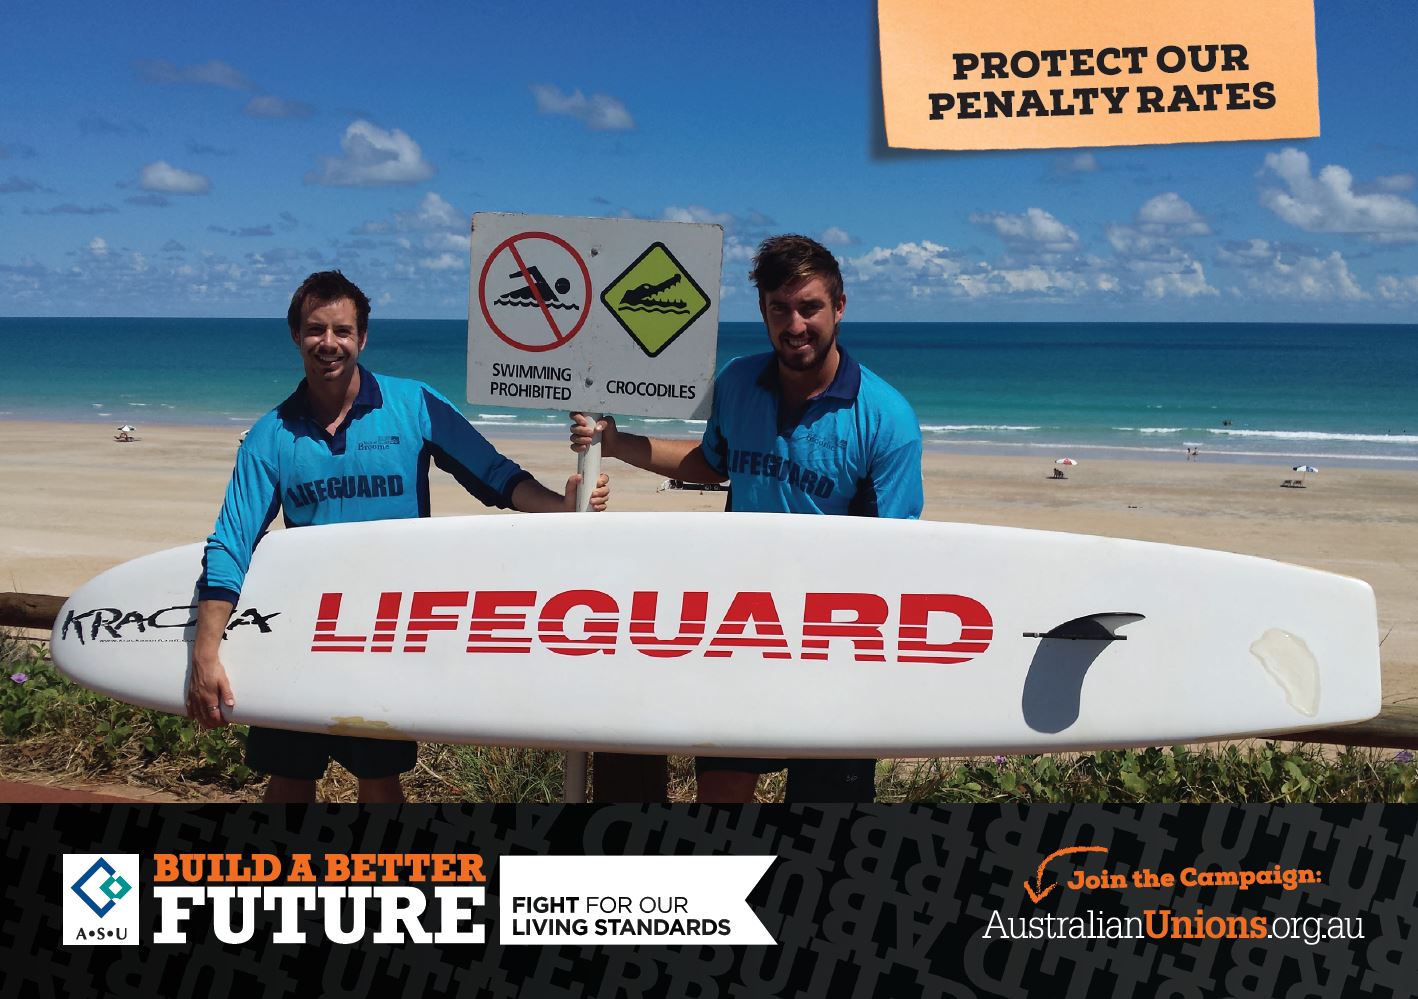 2015-penalty-rates-lifeguards